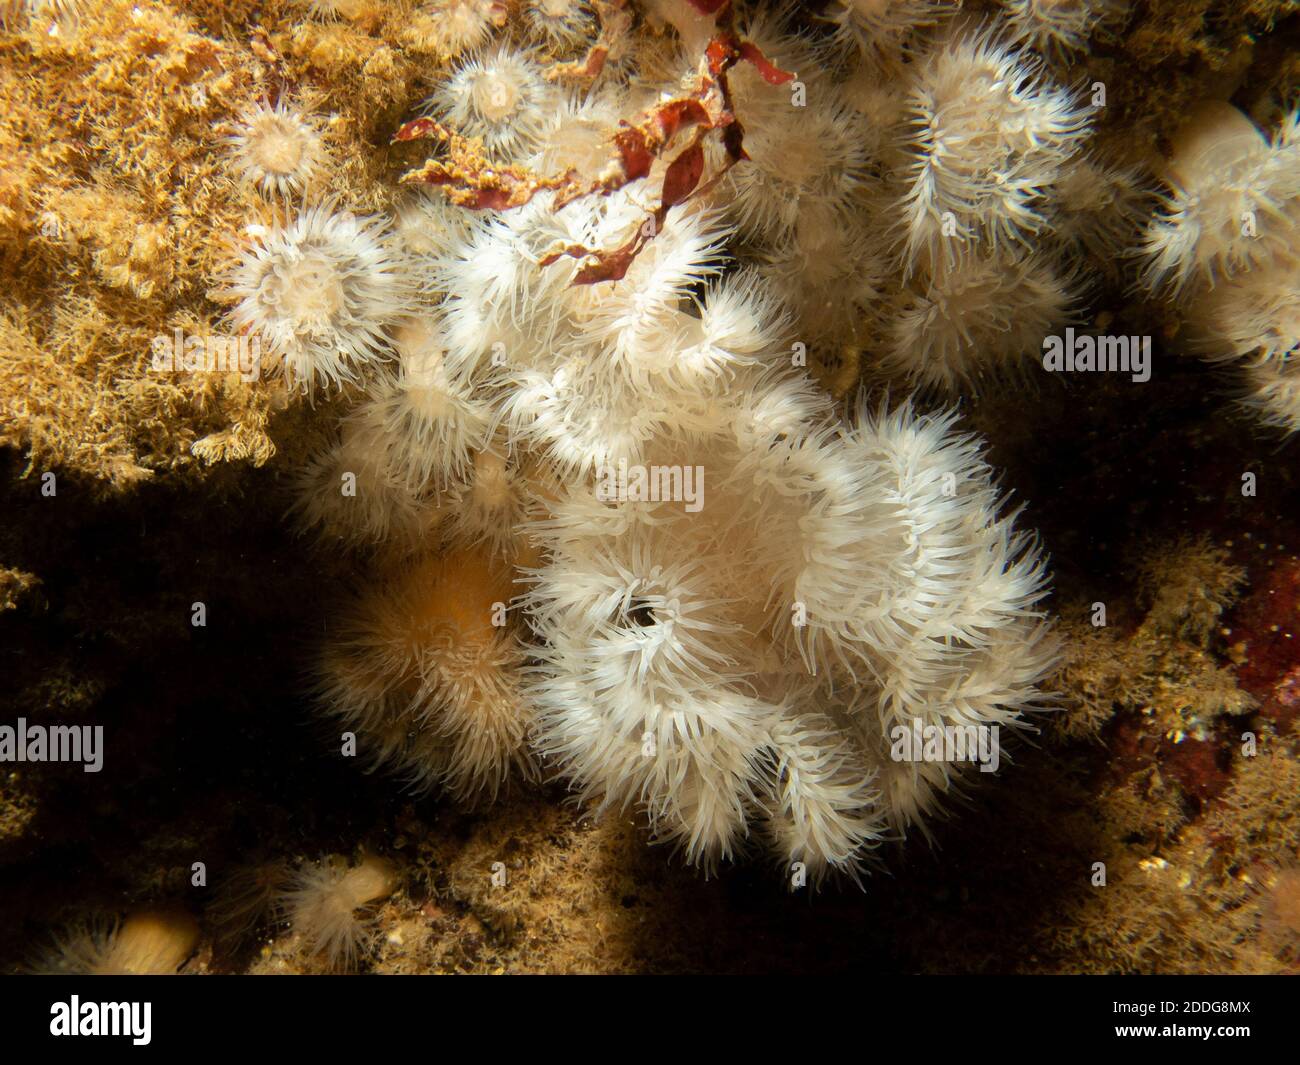 L'anémone de mer, Protanthea simplex se trouve en eaux profondes au large des côtes du nord-ouest de l'Europe. Photo des îles Weather, ouest de la Suède Banque D'Images